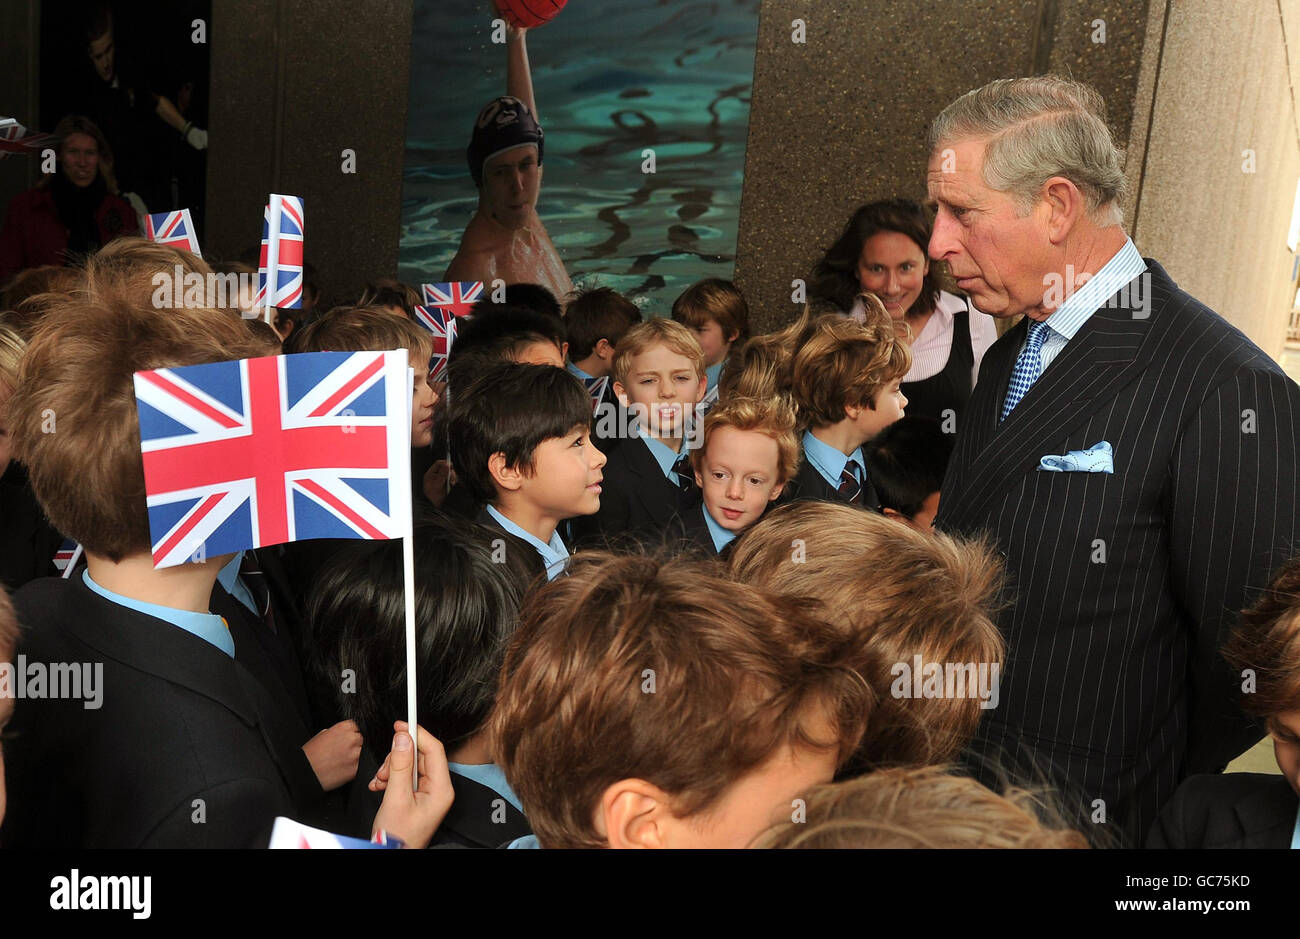 Il Principe di Galles parla con un gruppo di studenti, durante una visita al Dipartimento d'Arte della St. Paul's School, che celebra il suo 500° anniversario nella parte sud-occidentale di Londra, questa mattina. Foto Stock